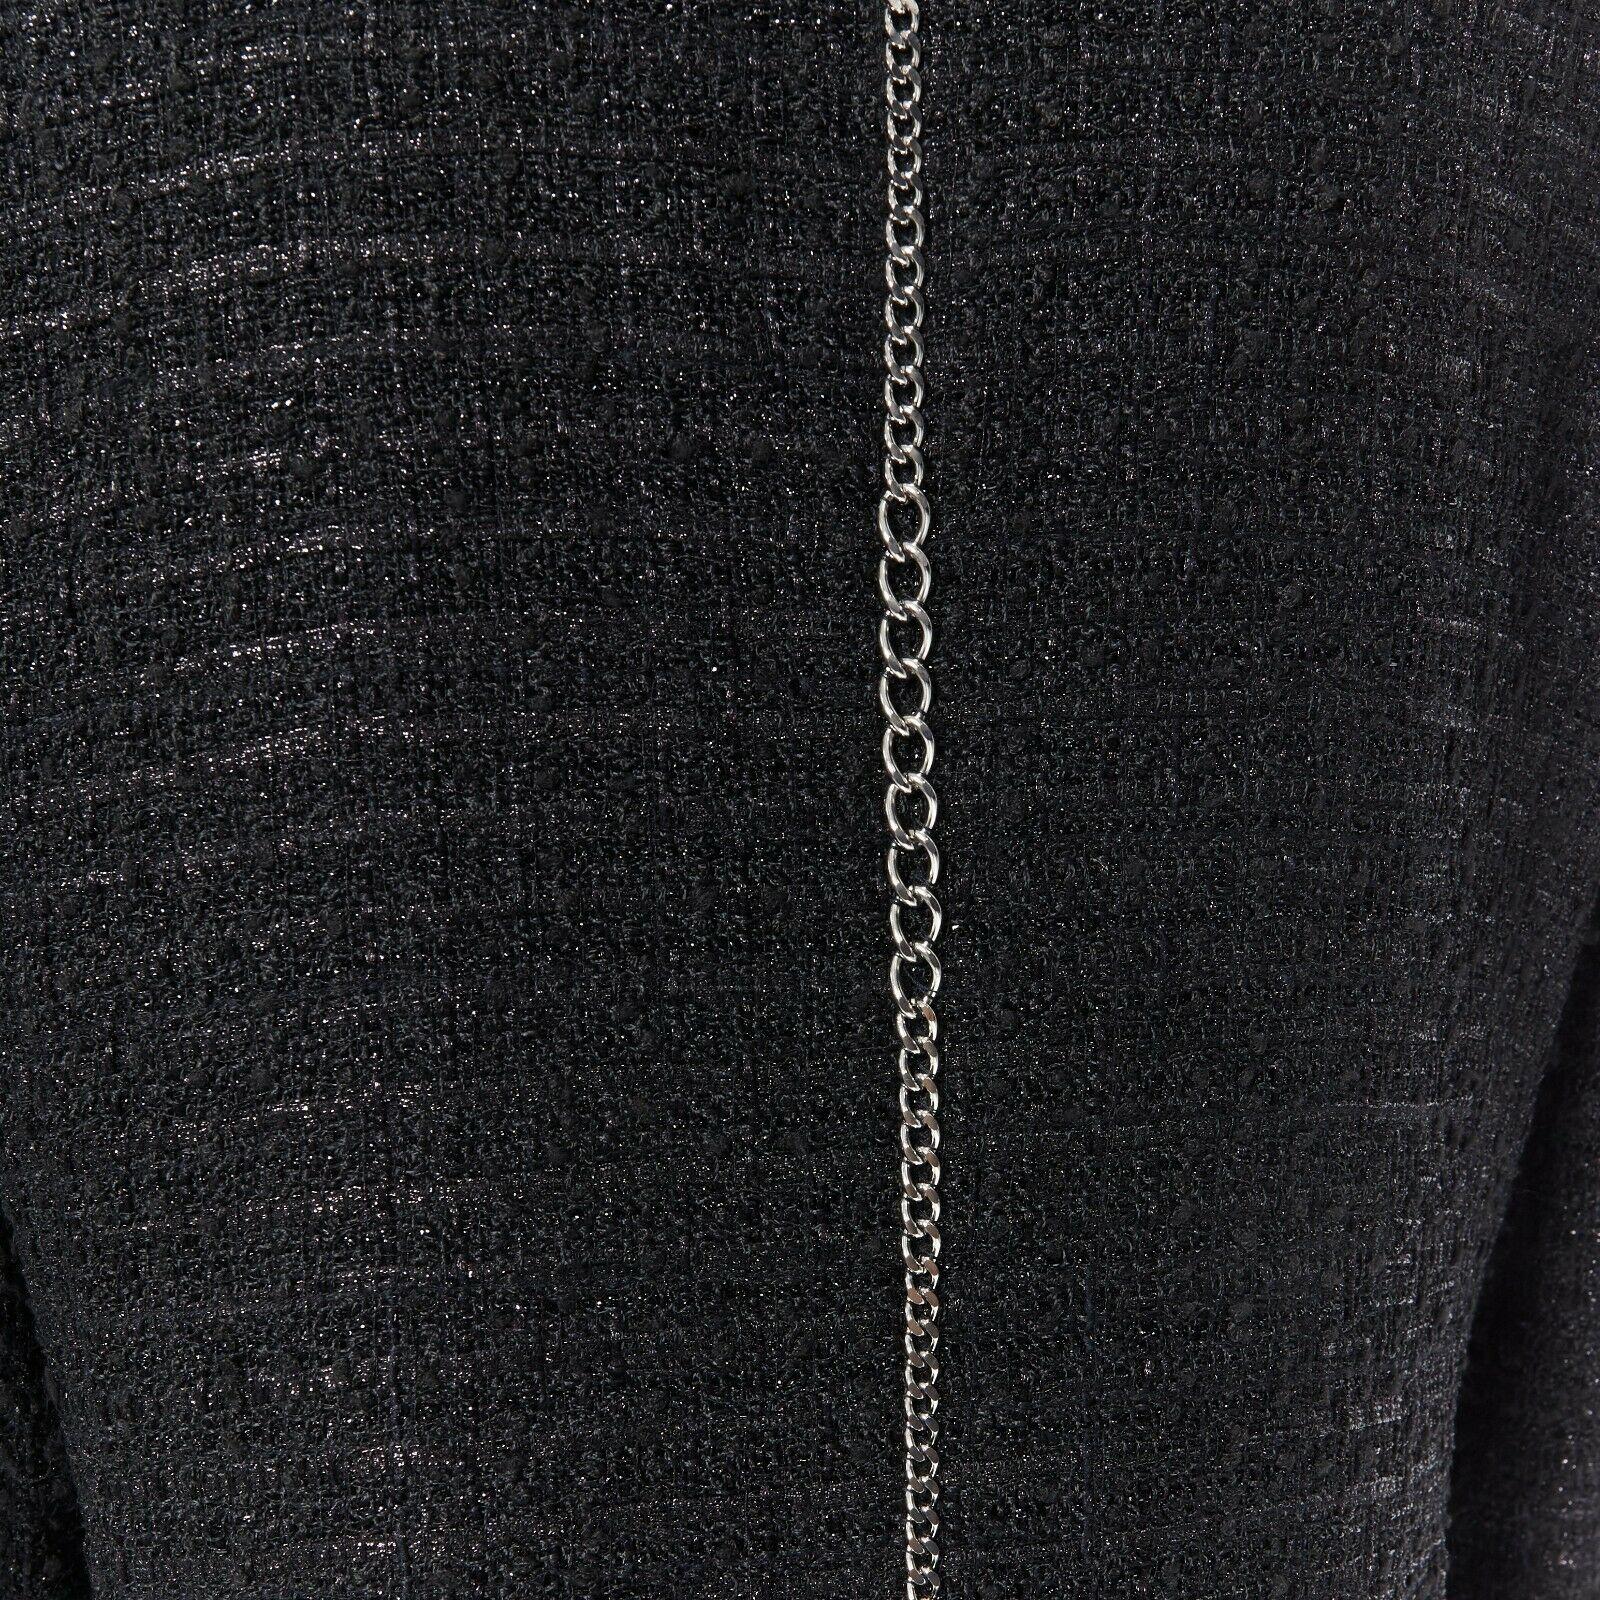 CHANEL MEN 06P black fantasy tweed lurex silver chain trim dinner jacket FR46 M 2